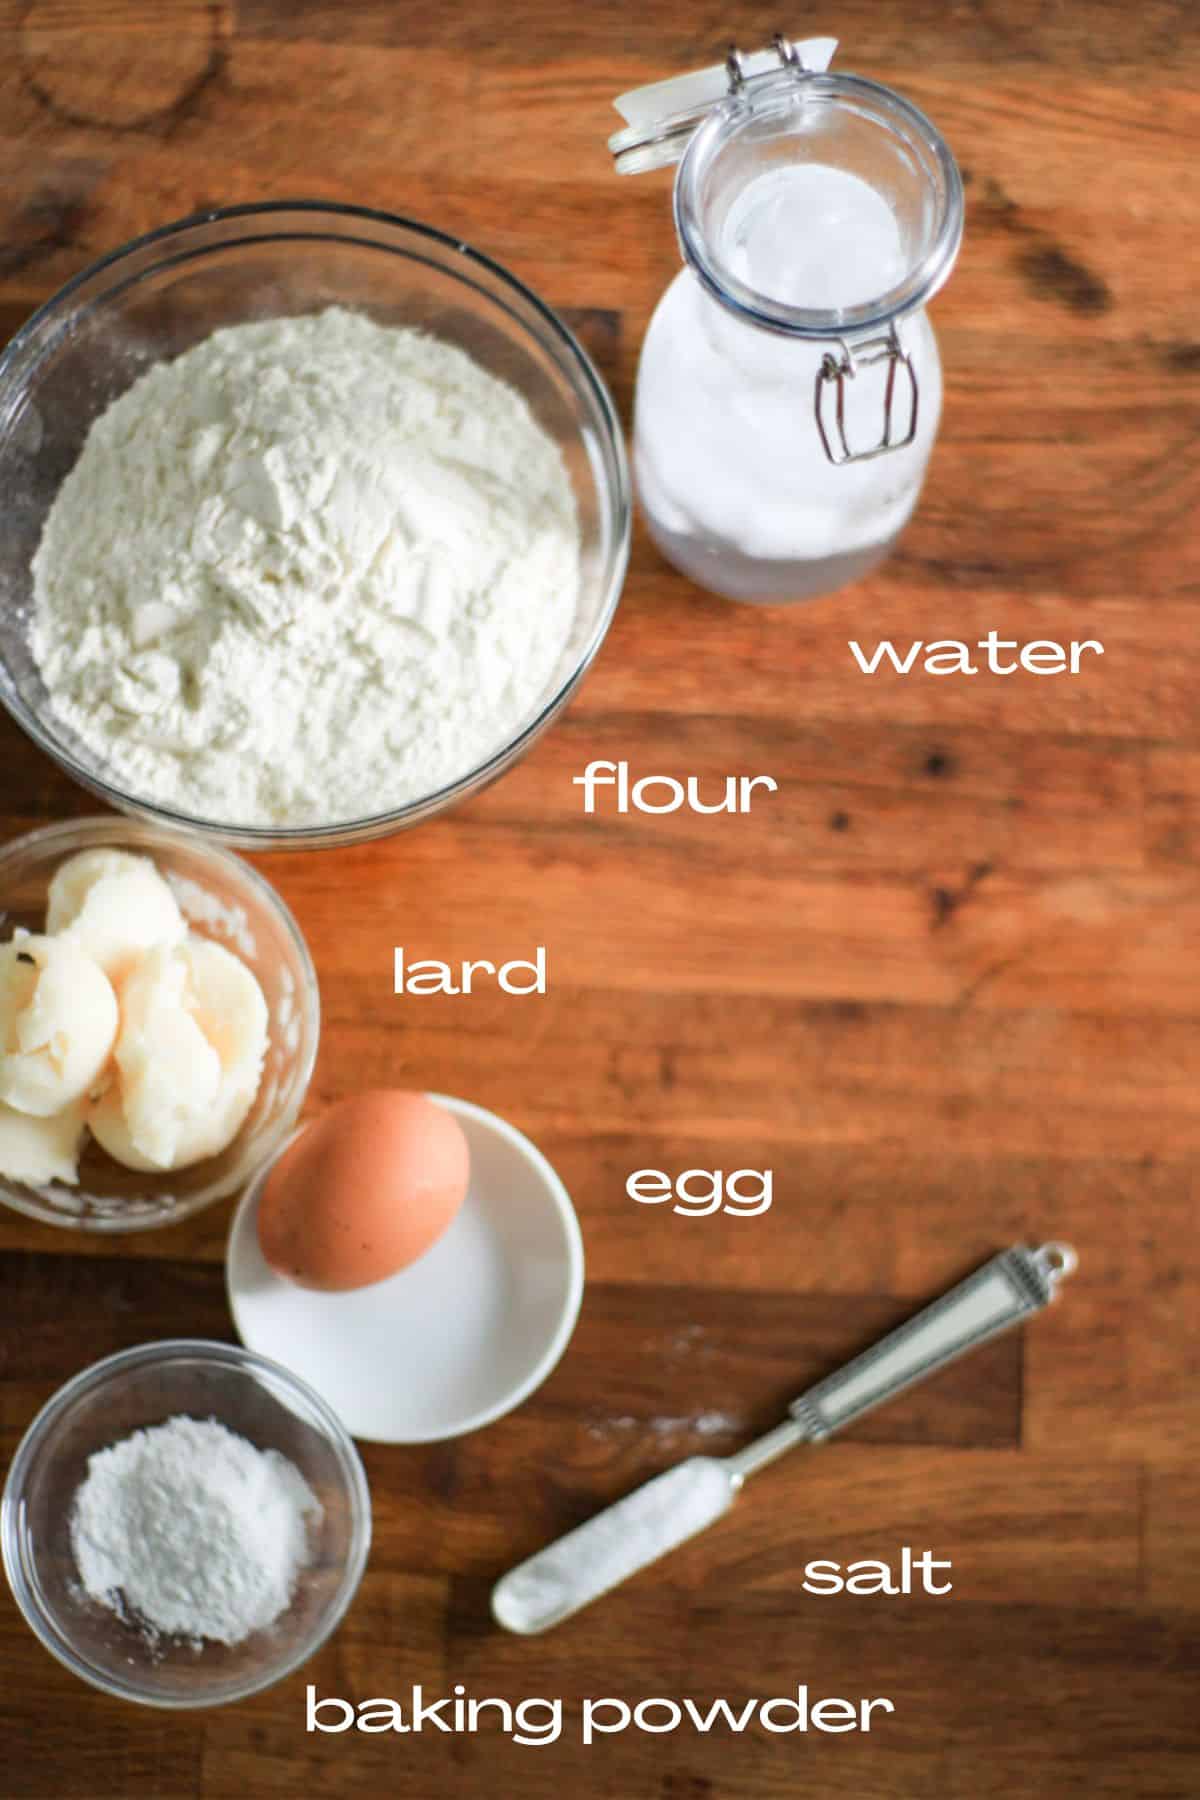 ingredients to make empanada dough. Flour, iced water, fat or lard, egg, baking powder, and salt